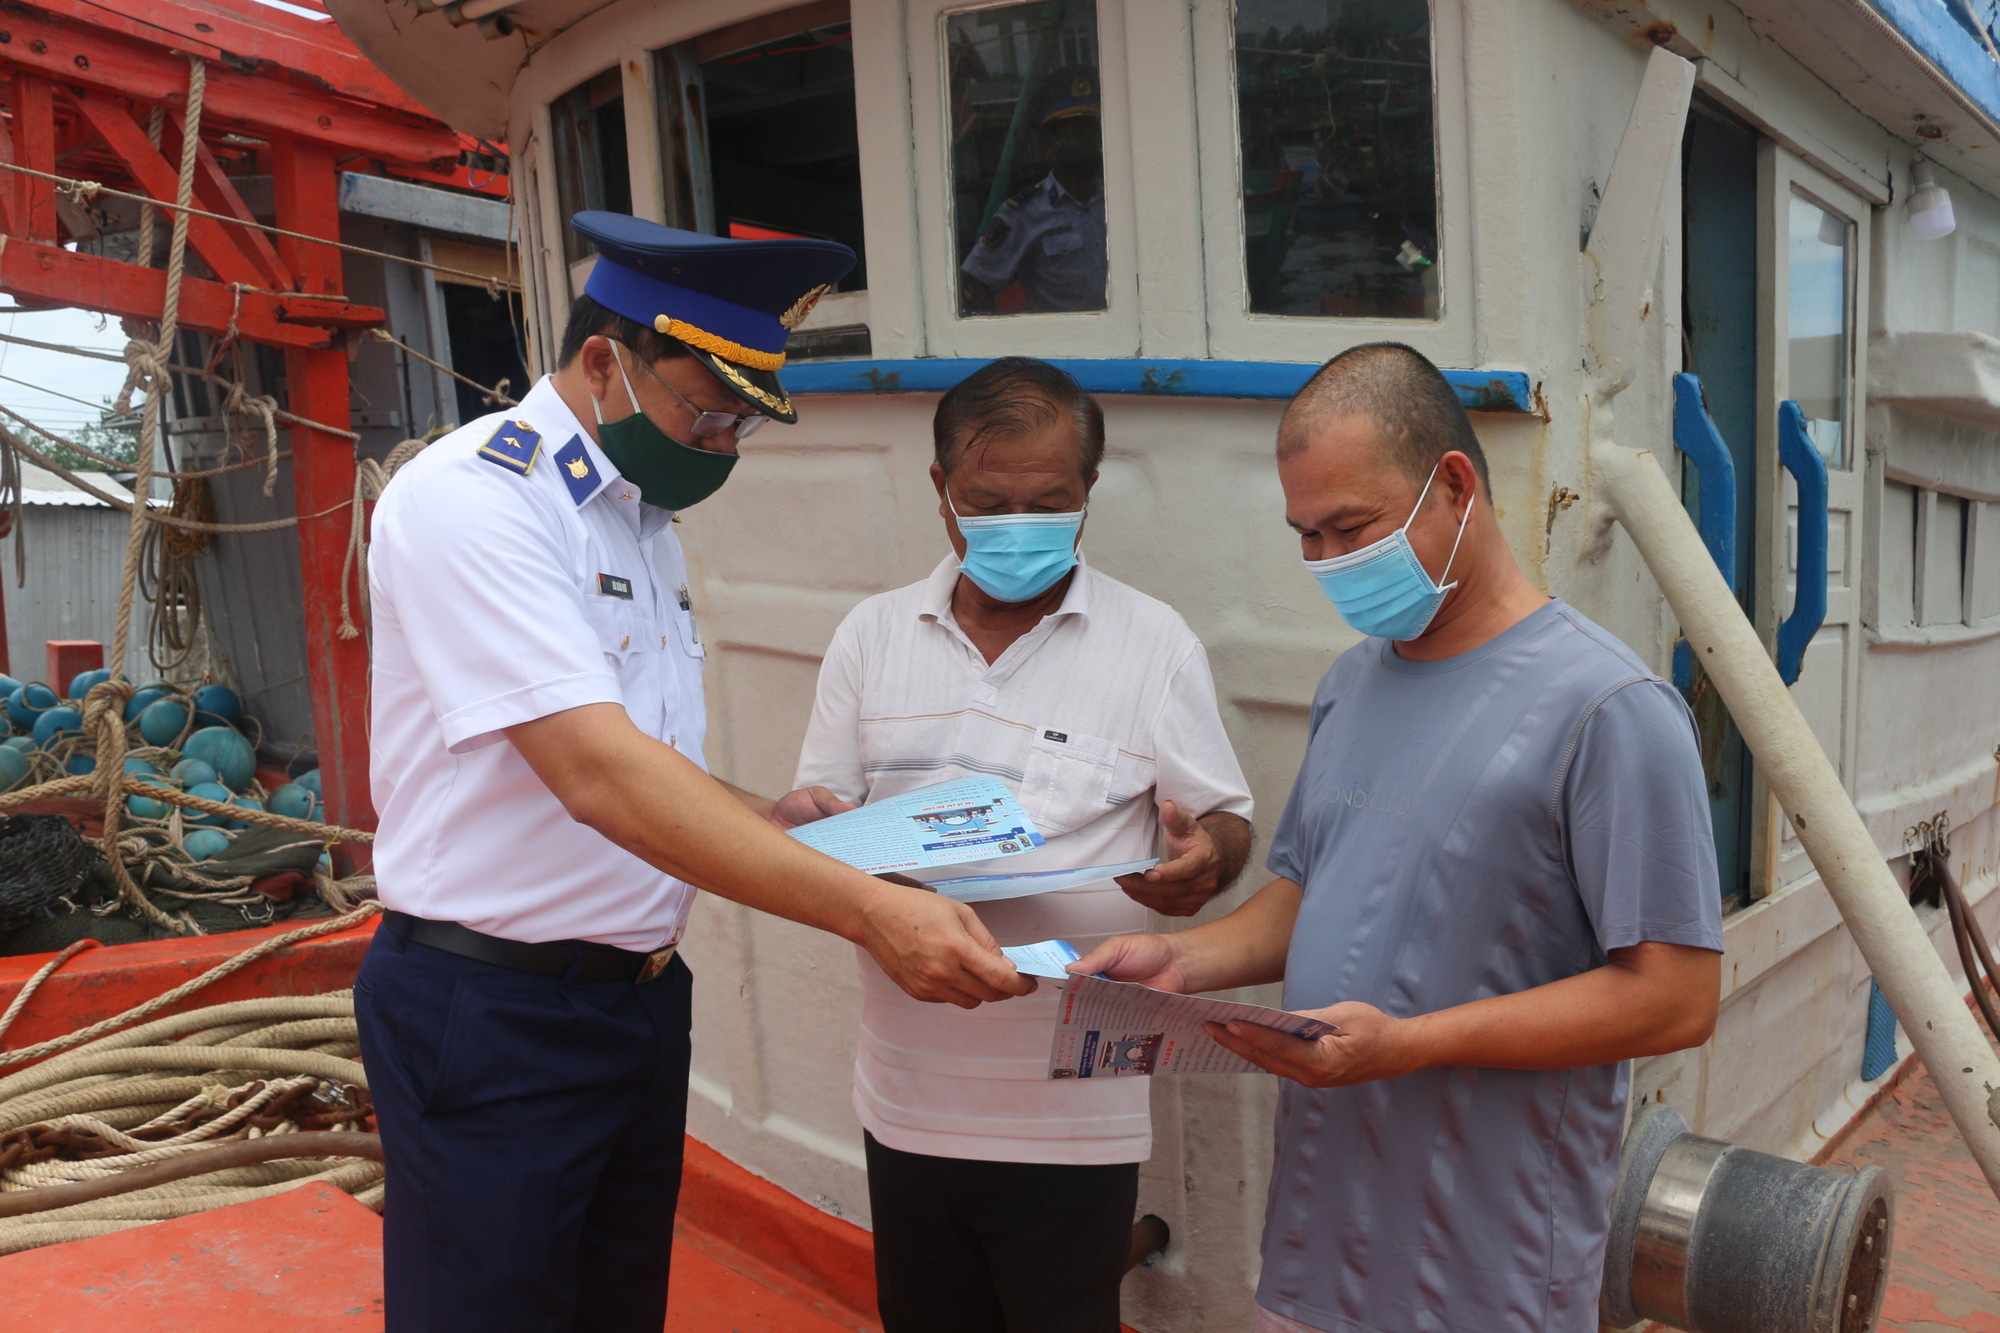 Cảnh sát biển: Từ năm 2020, Việt Nam đã tăng cường lực lượng cảnh sát biển. Những cảnh sát biển này đang trở thành niềm tự hào của đất nước bởi những nỗ lực bảo vệ biển đảo và nguồn lợi thủy sản. Những bức ảnh về cảnh sát biển Việt Nam đang tạo nên sức hút đặc biệt đối với những người yêu thích và tôn trọng công lý.